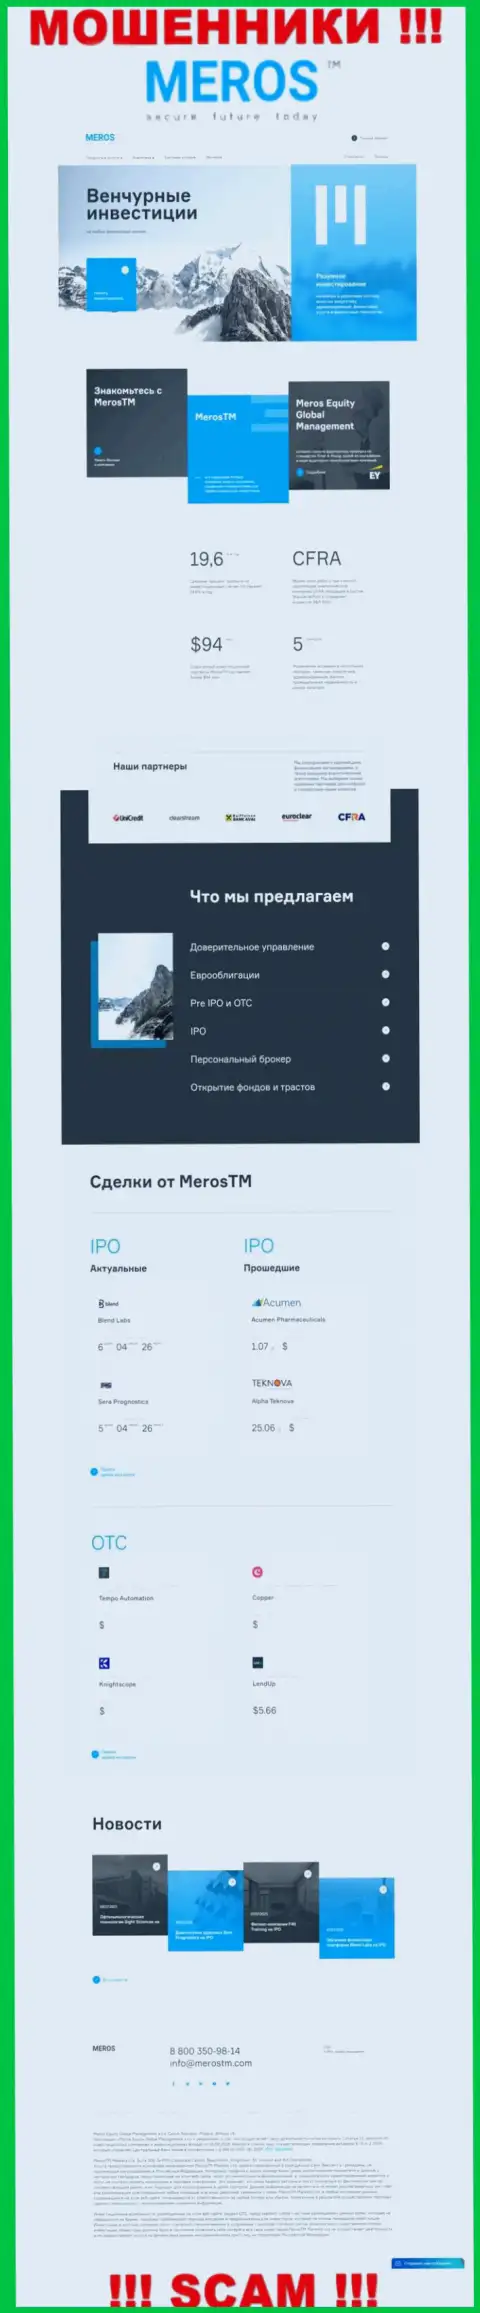 Разбор официального сайта мошенников MerosMT Markets LLC